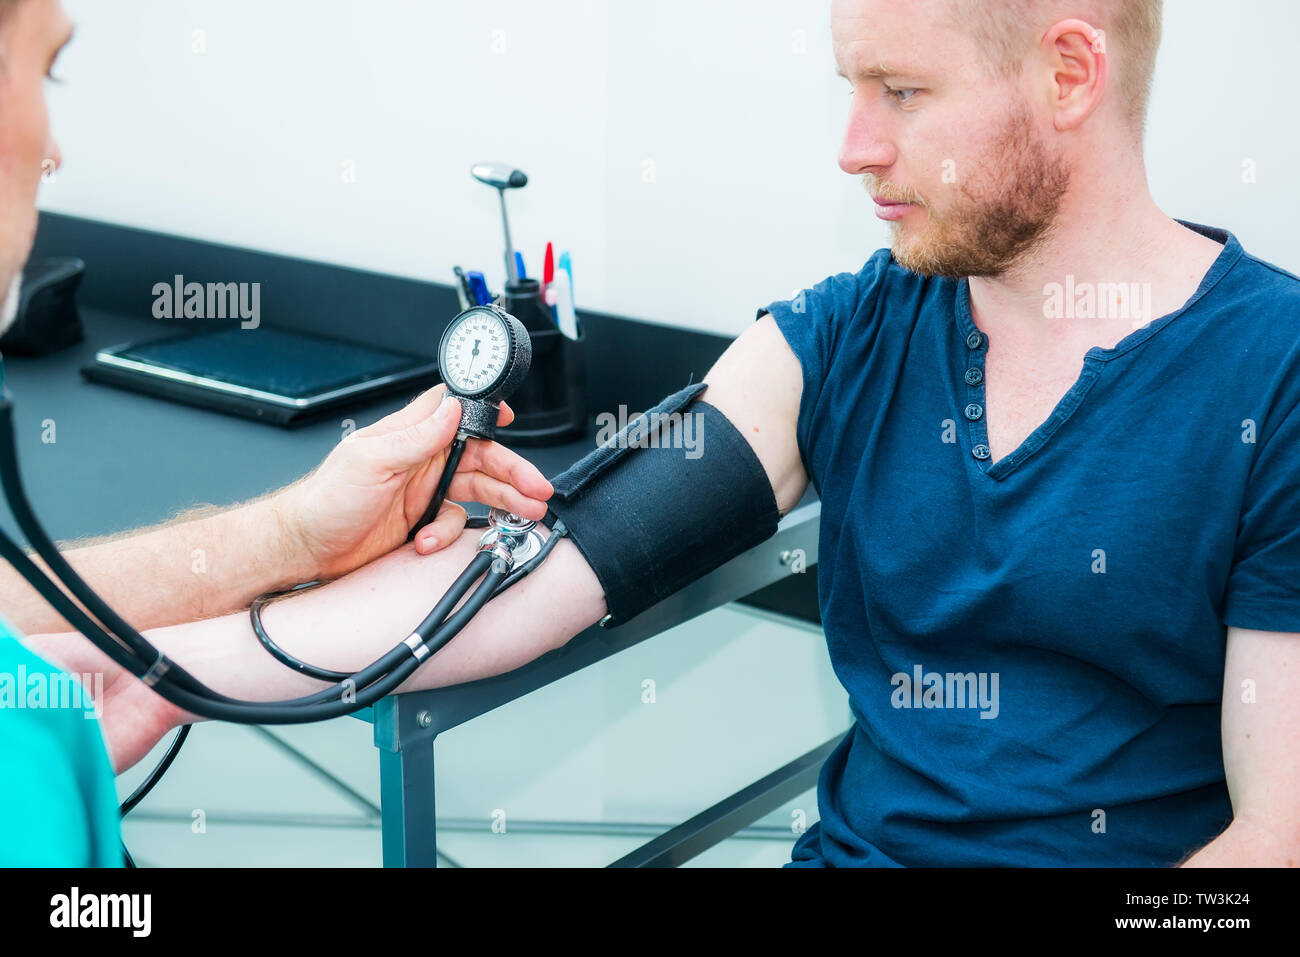 Männlicher Arzt mit Blutdruckmessgerät mit Stethoskop Kontrolle Blutdruck  zu einer jungen männlichen Patienten im Krankenhaus. Gesundheitswesen,  gesunden Lebensstil und Stockfotografie - Alamy